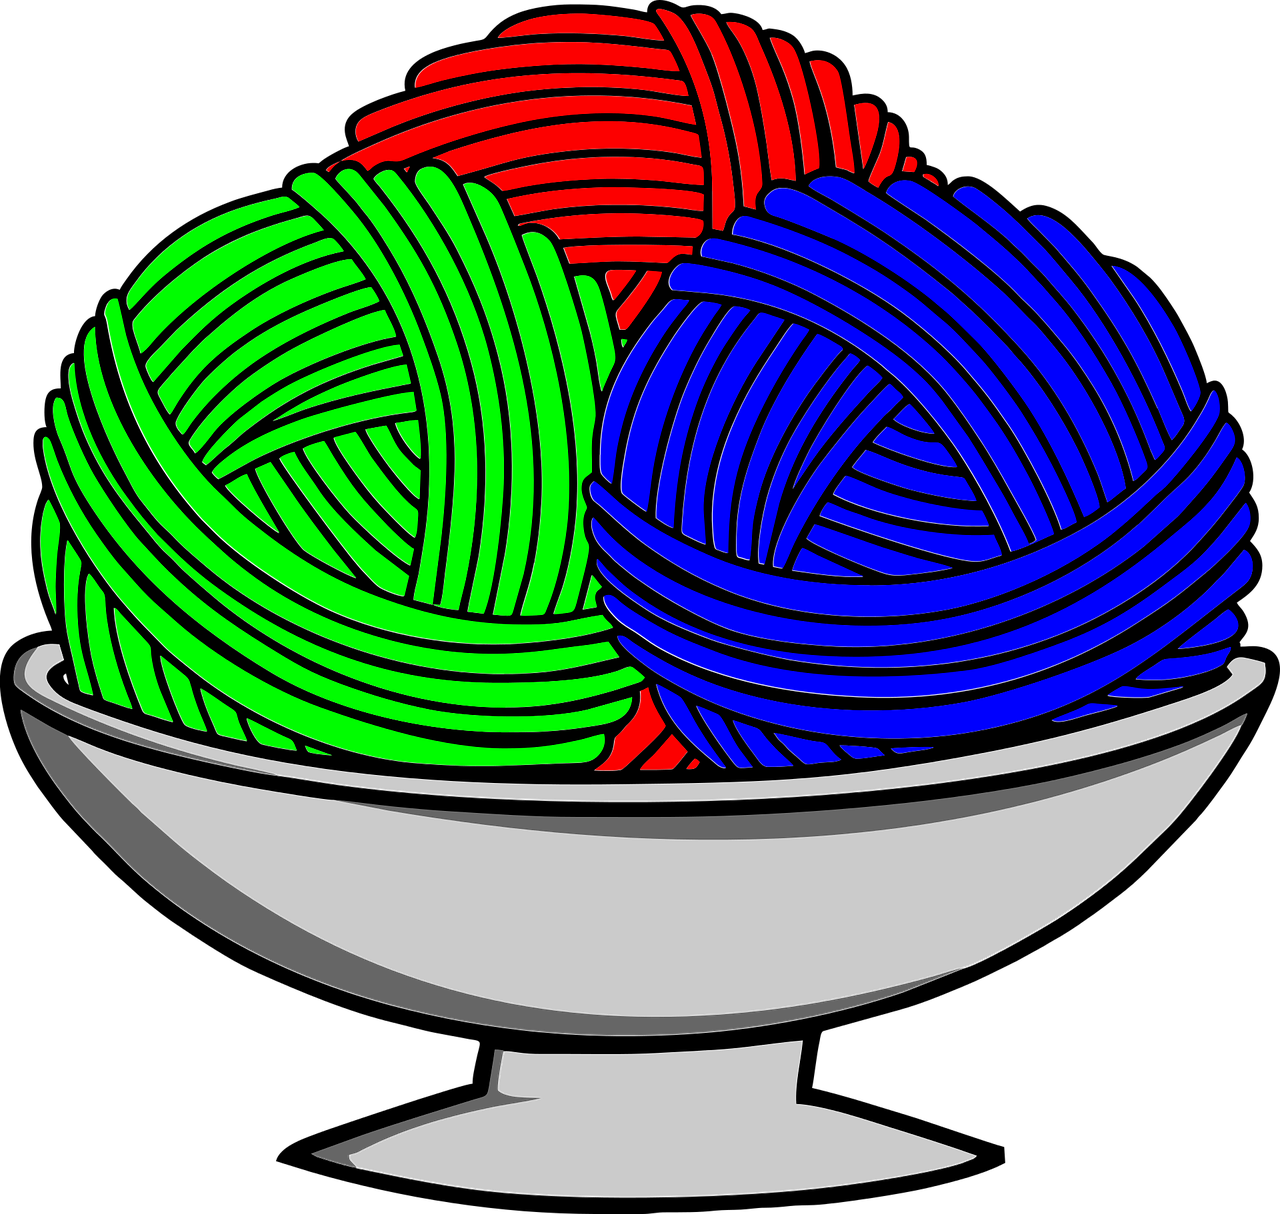 bowl of yarn yarn knit free photo